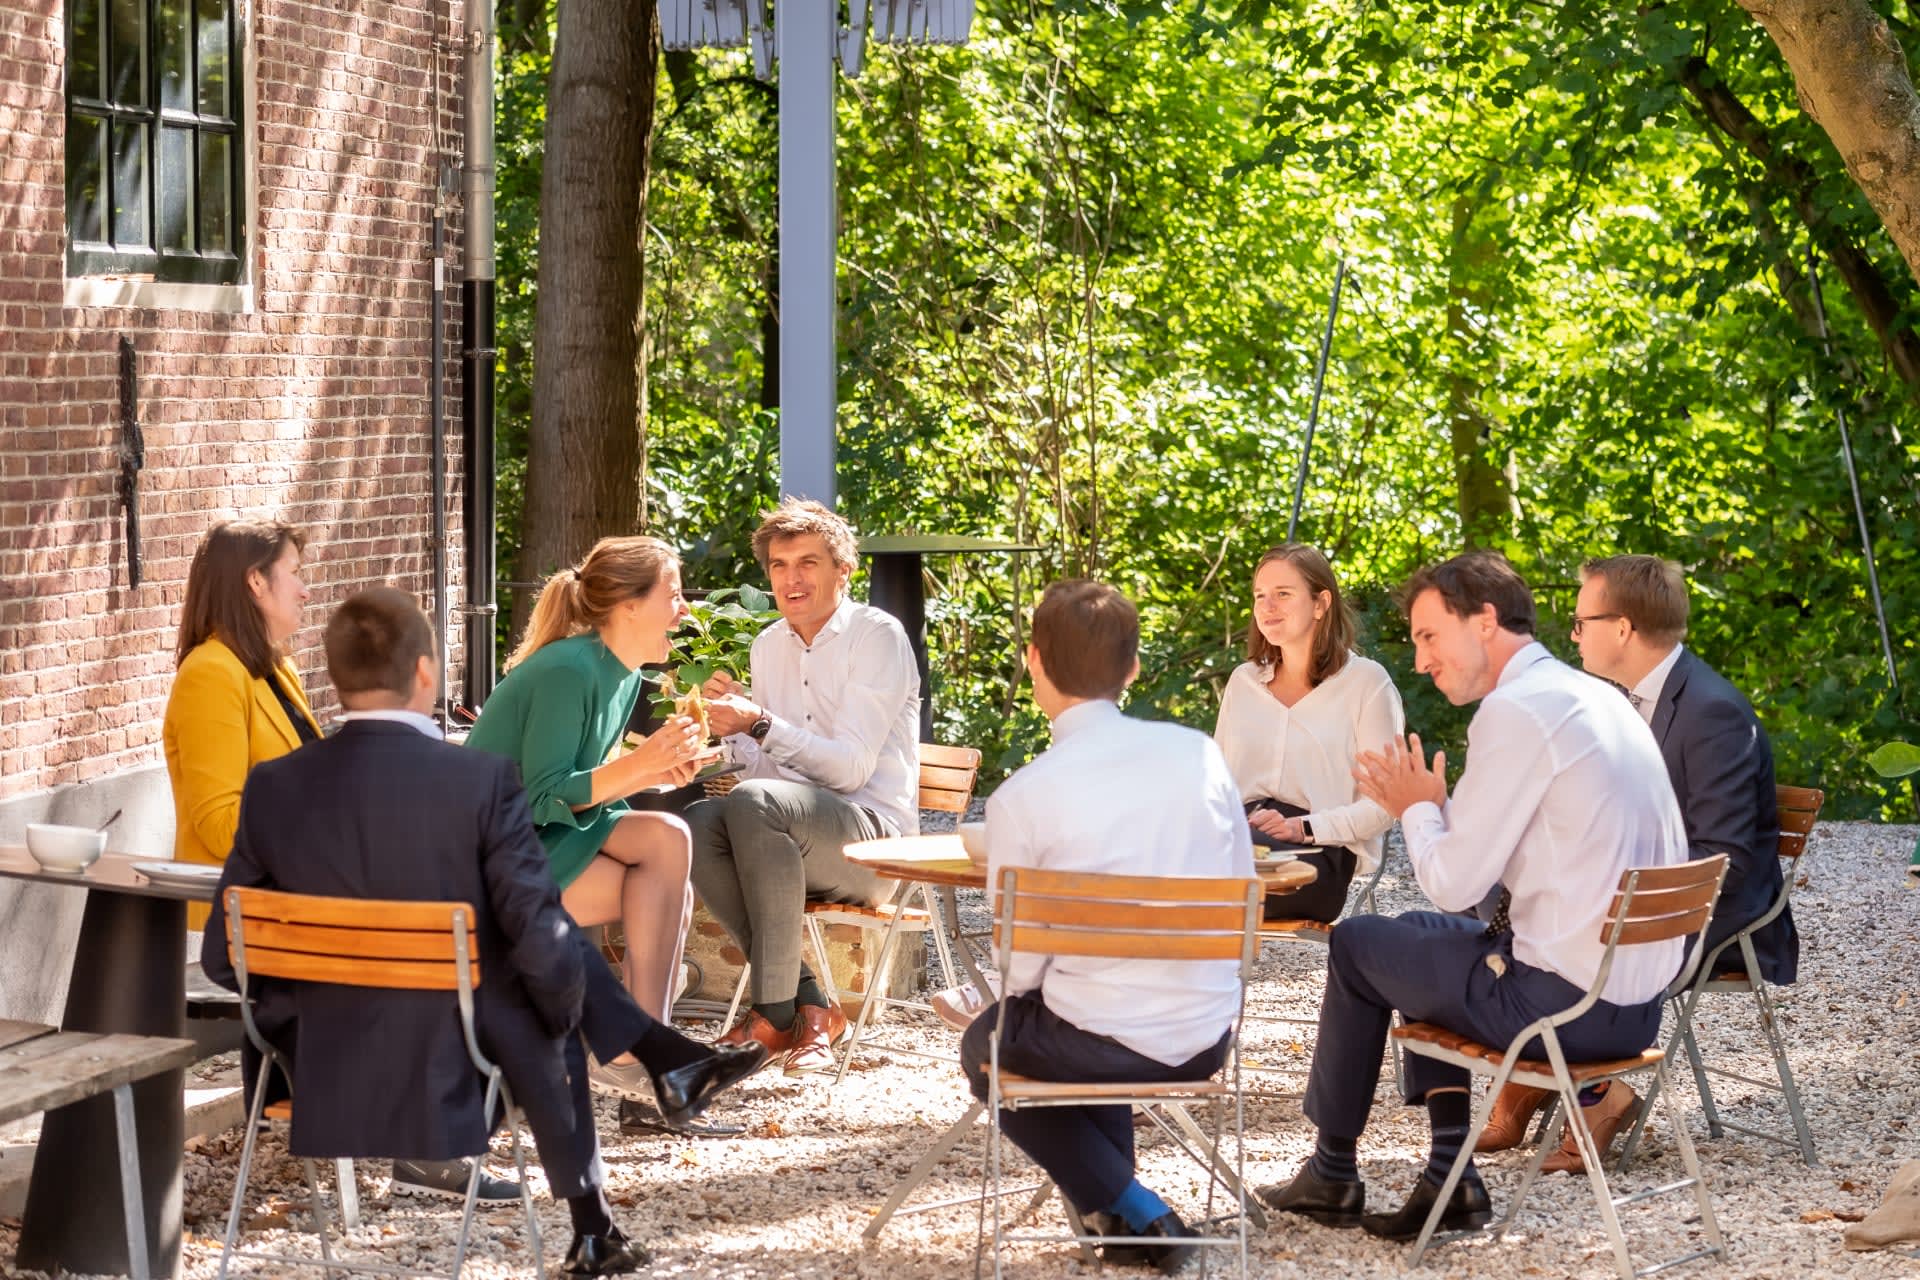 Acht consultants die buiten in de tuin lunchen, met elkaar praten en lachen. Zitten op stoelen in groene omgeving.